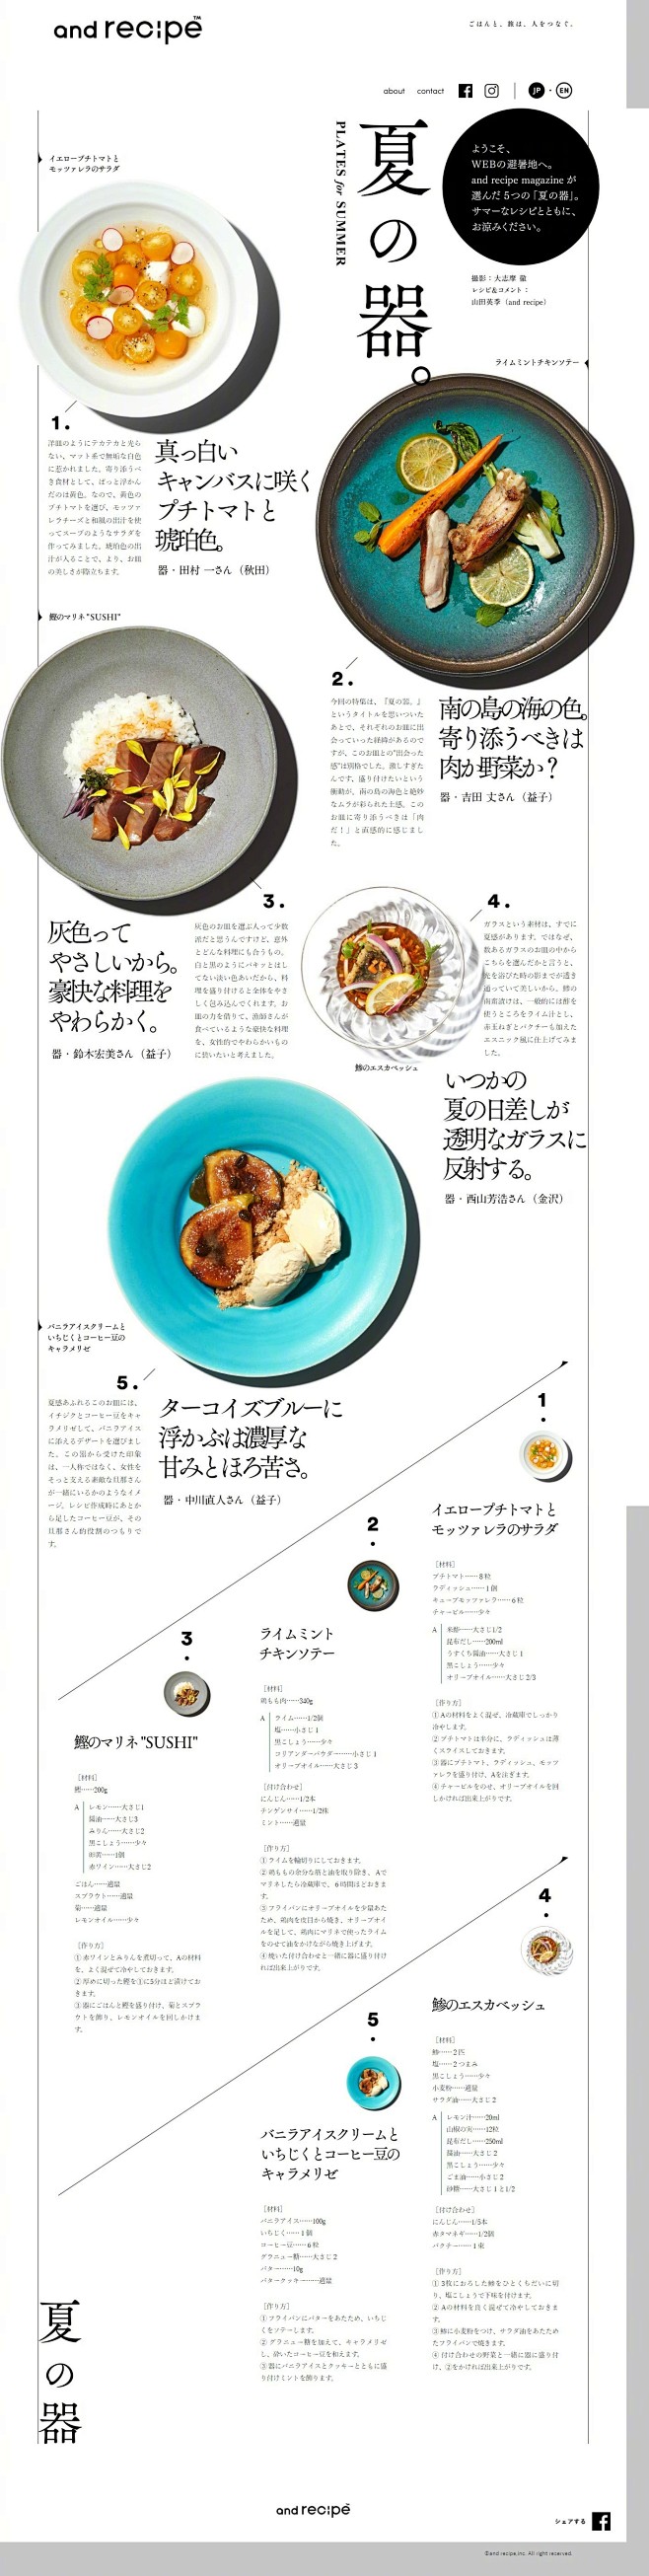 画册平面广告 日式风格 美食  排版布局